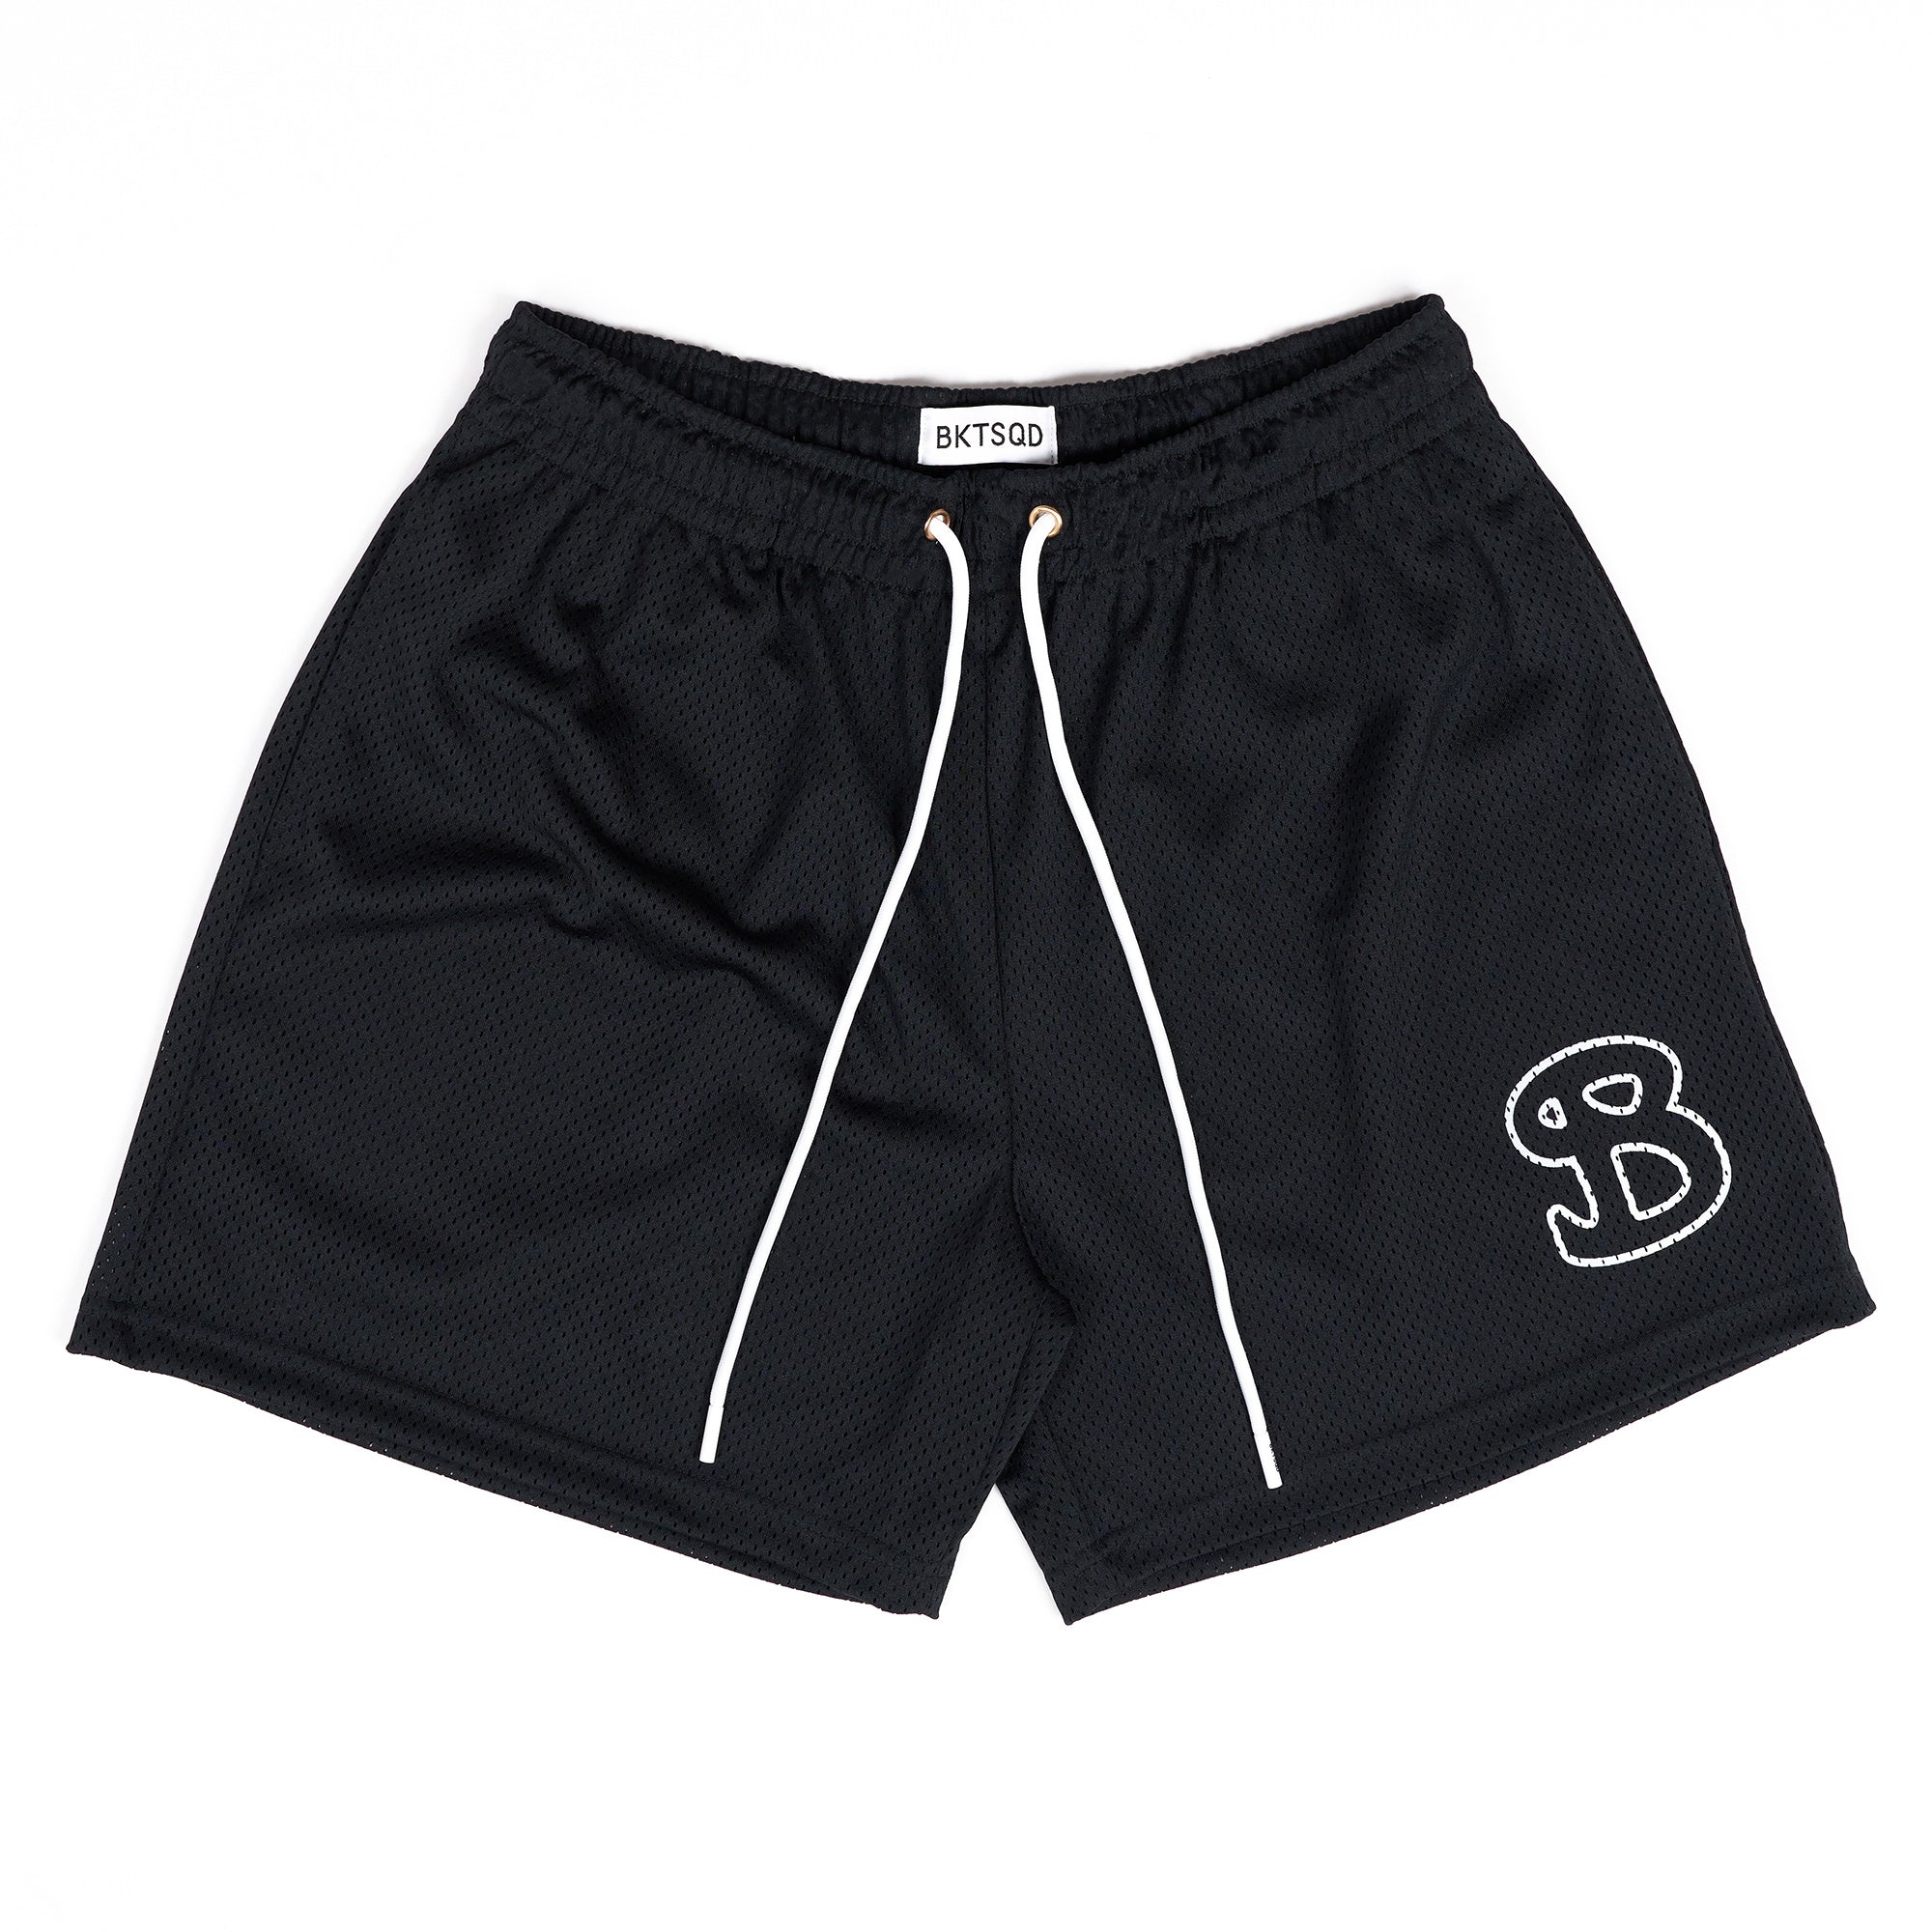 ESSENTIALS: Black Solid Shorts - ADULT